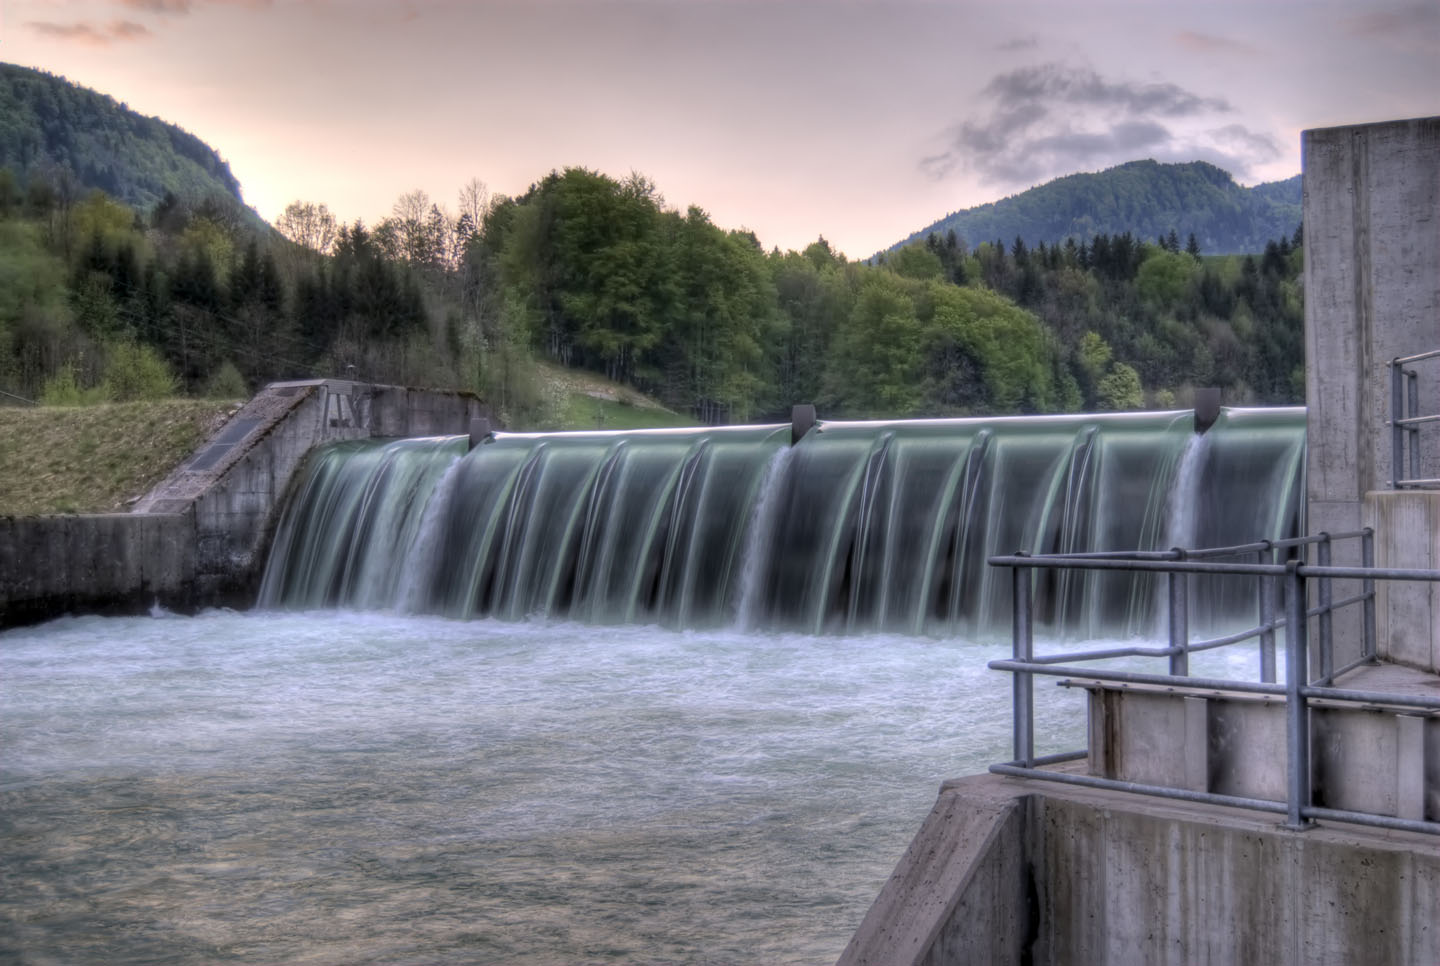 Überlauf eines Staudamms. Steht für Nutzung von Wasserkraft.